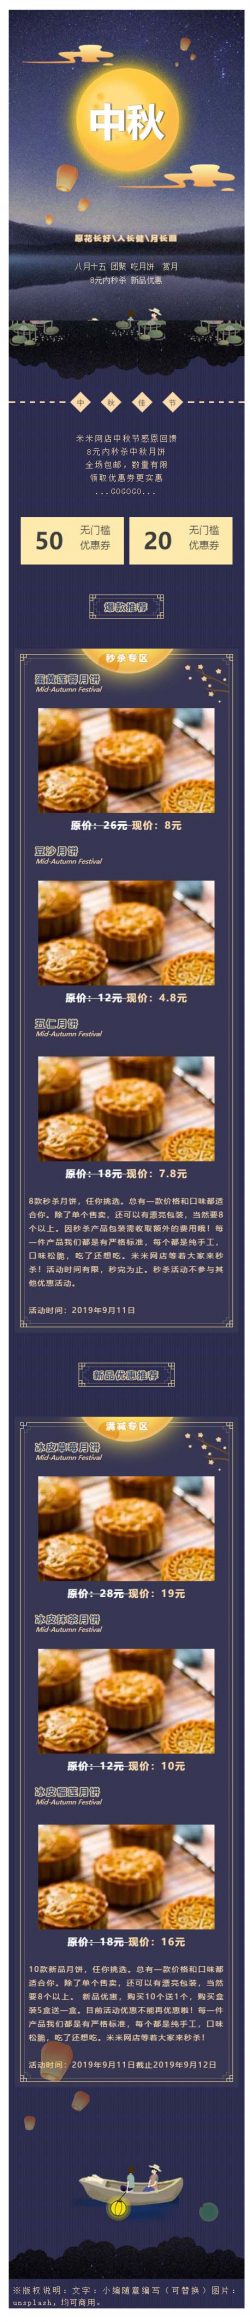 中秋节月饼电商模板微商卖月饼推送素材公众号模板